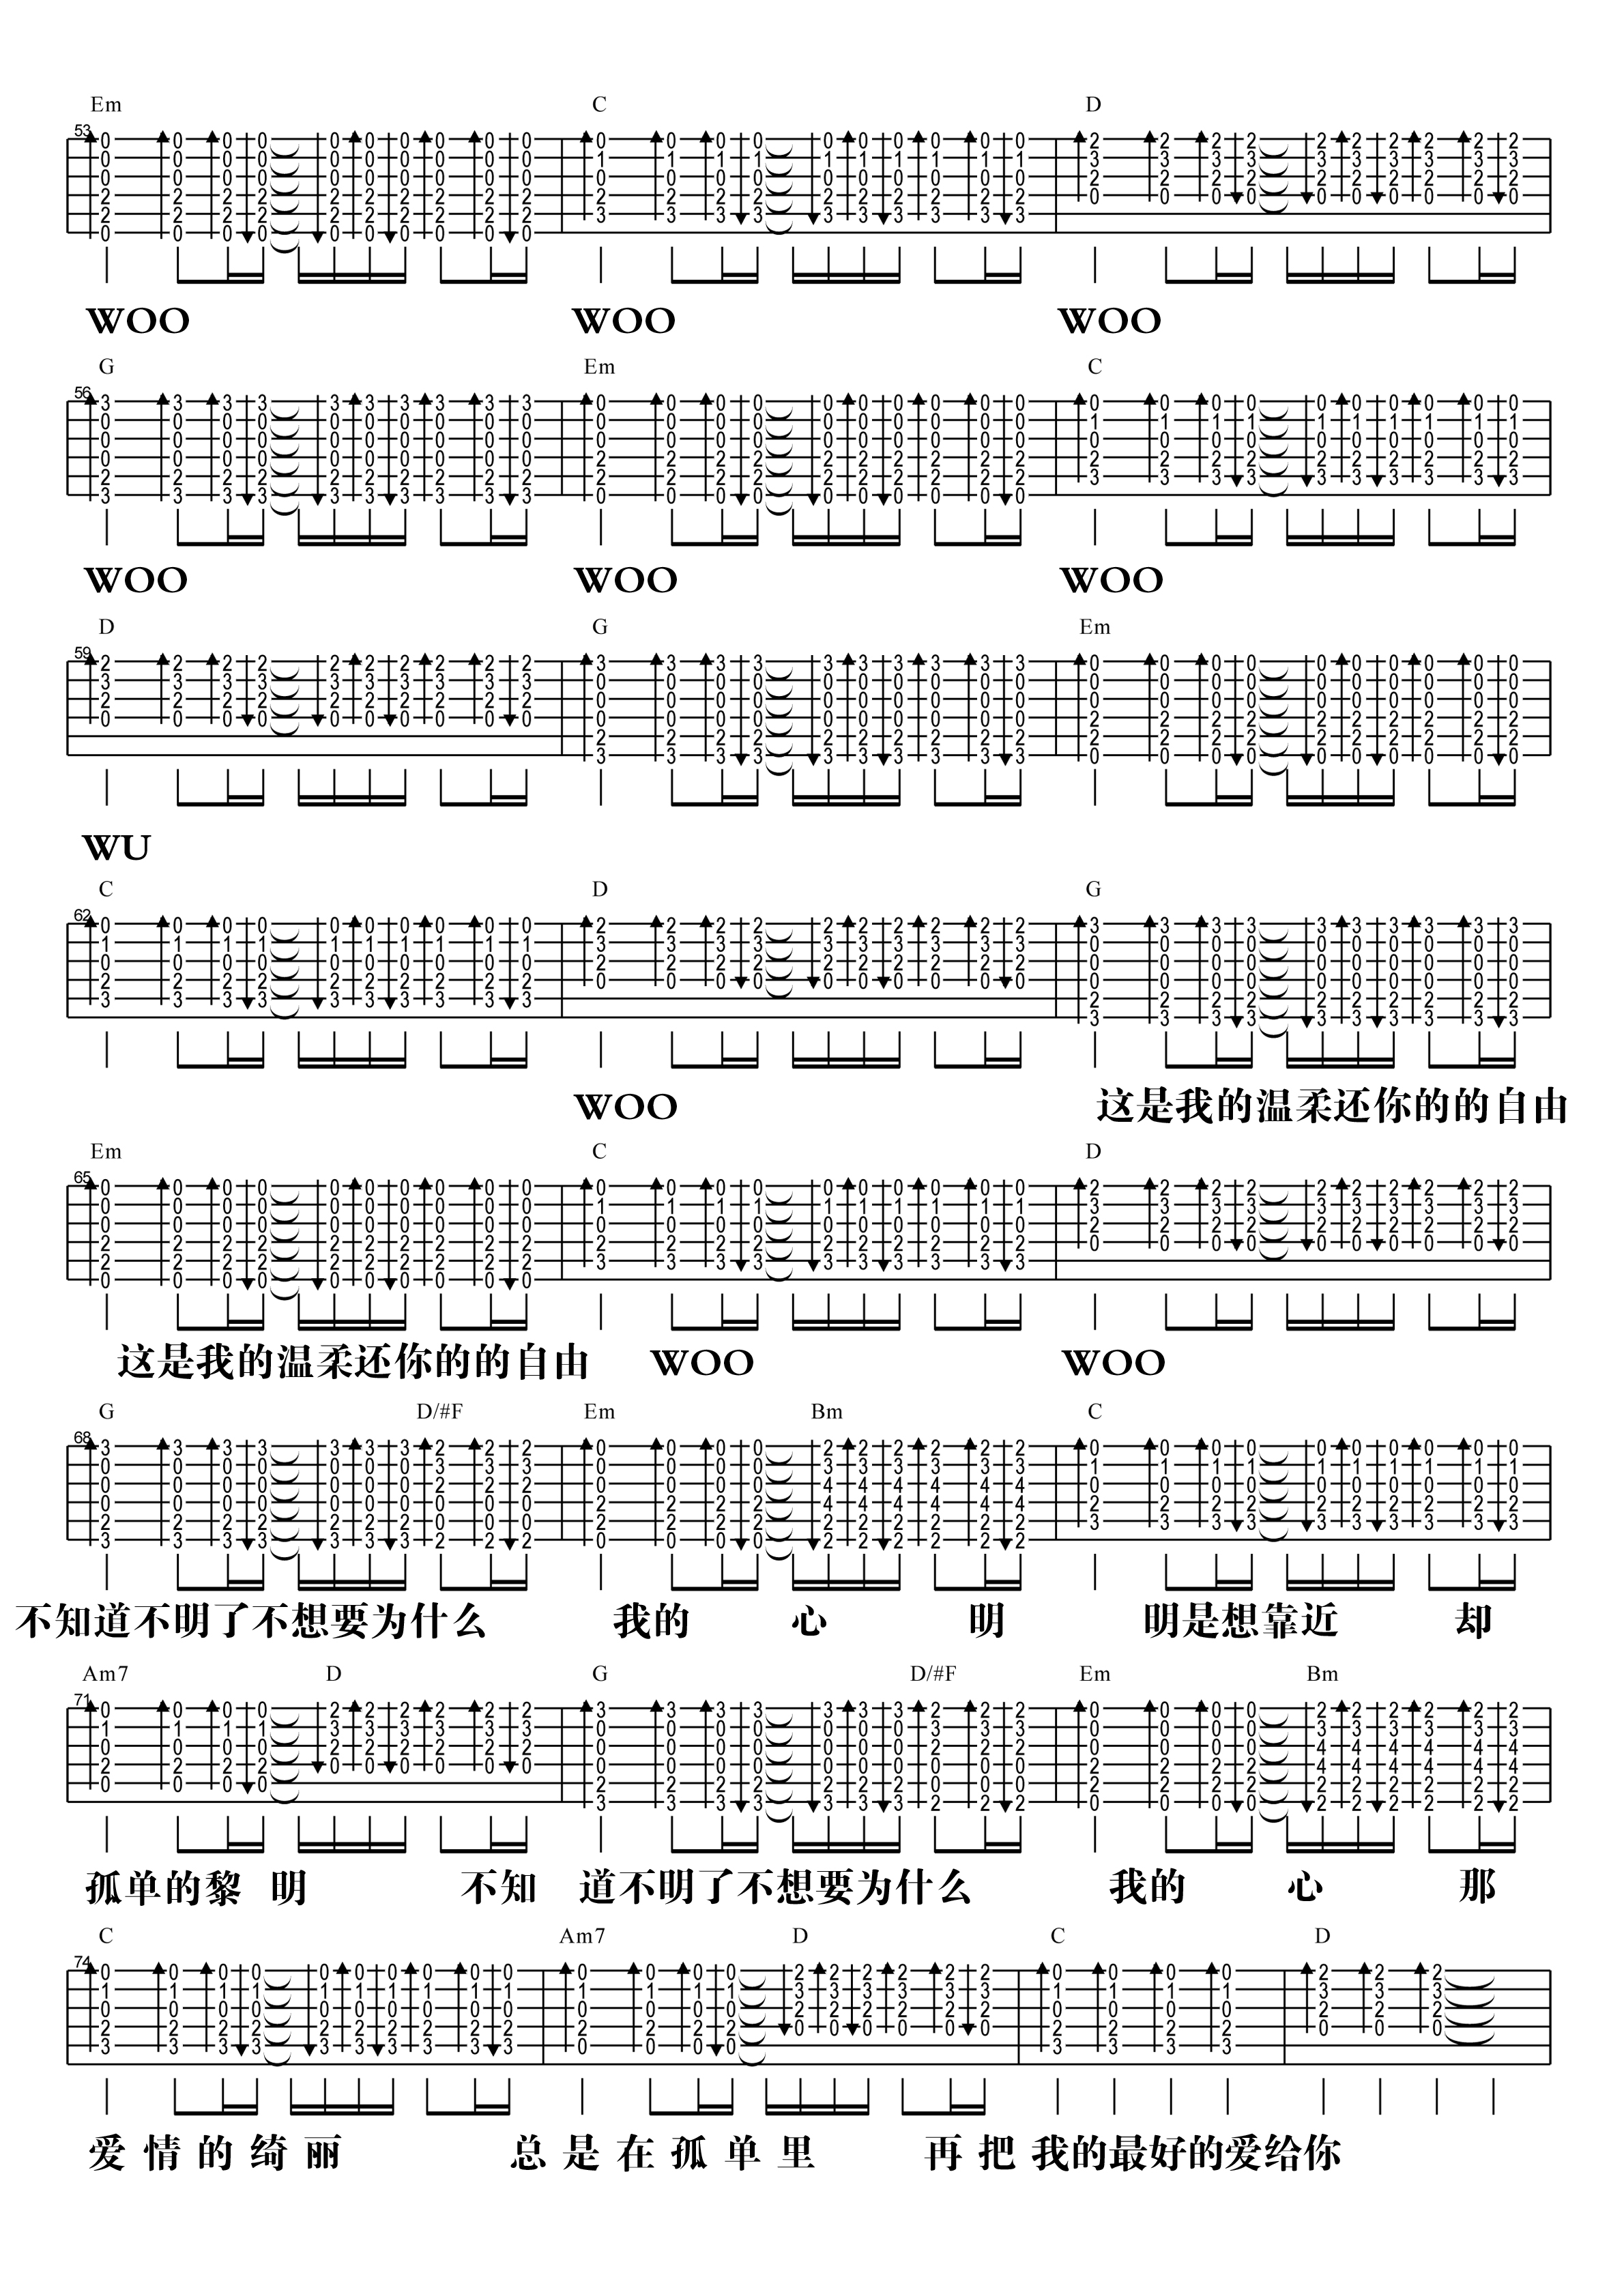 【阿信乐器】#19 五月天《温柔》3DNA版吉他教学吉他谱(图片谱,弹唱)_五月天(Mayday)_温柔·-3.jpg